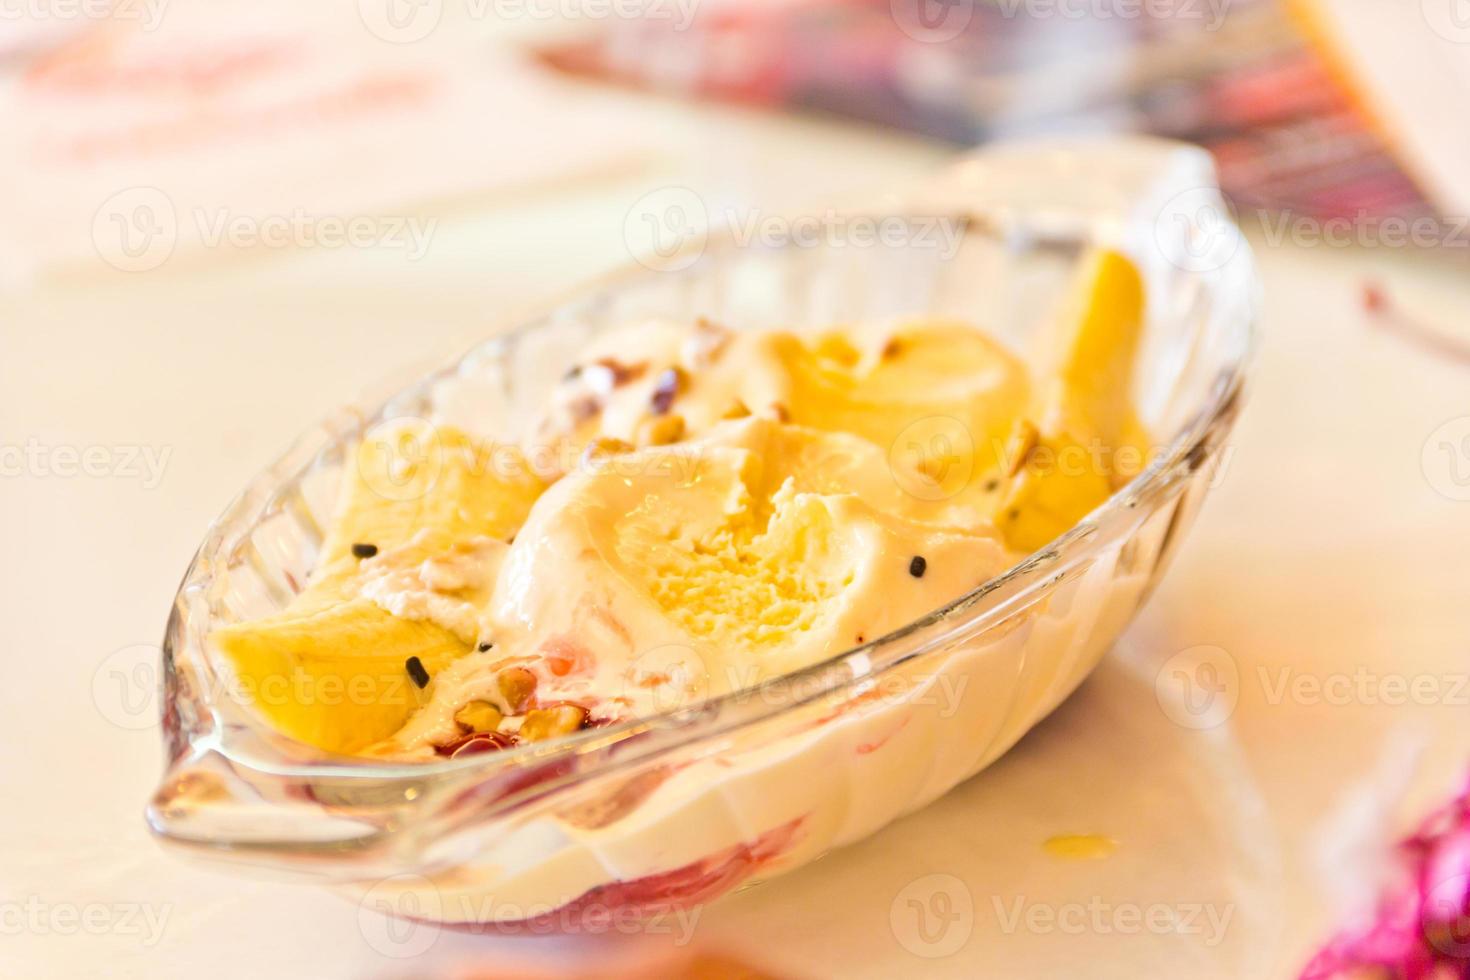 sorvete de baunilha com molho de banana e chocolate foto